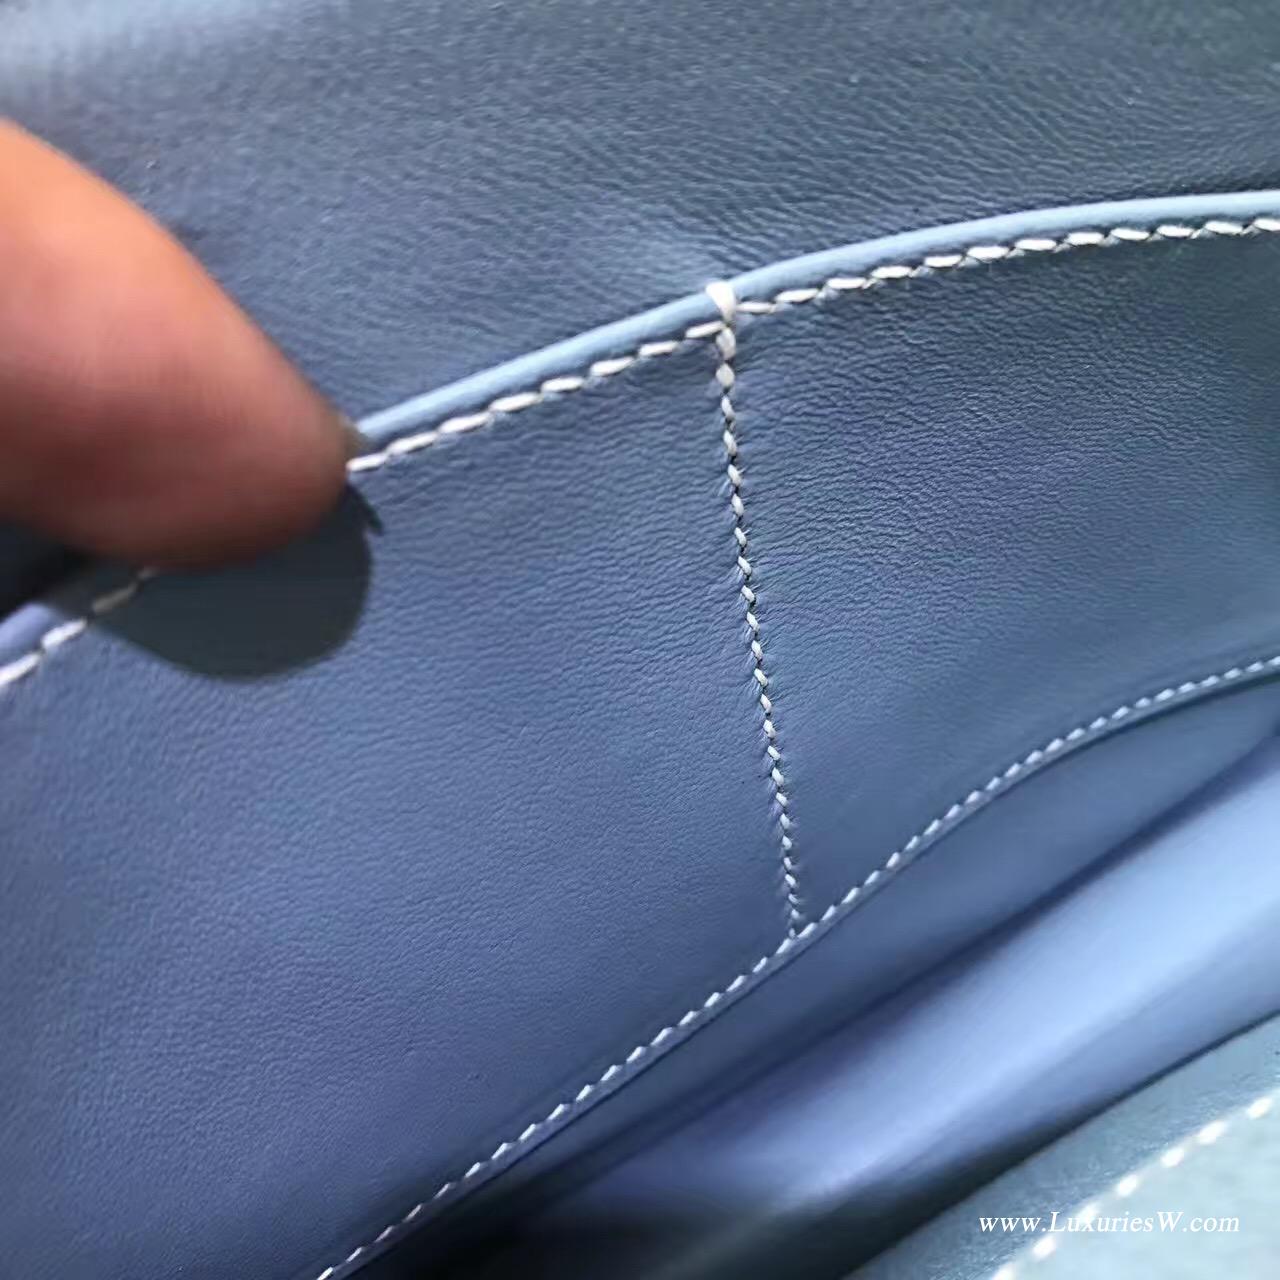 愛馬仕 Herems Verrou Chaine bag 手包最新款手包 J7 Blue Lin亞麻藍算藍色系列